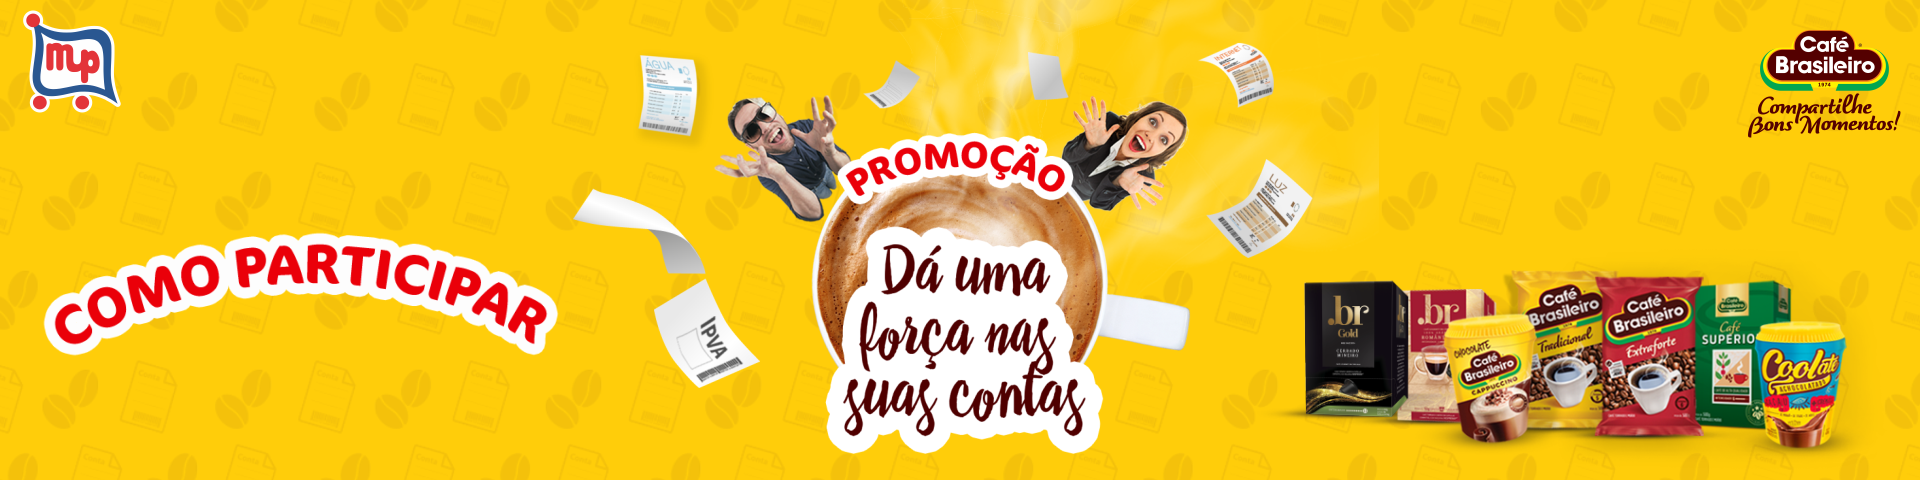 Promoo Caf Brasileiro "D uma fora nas suas contas"!